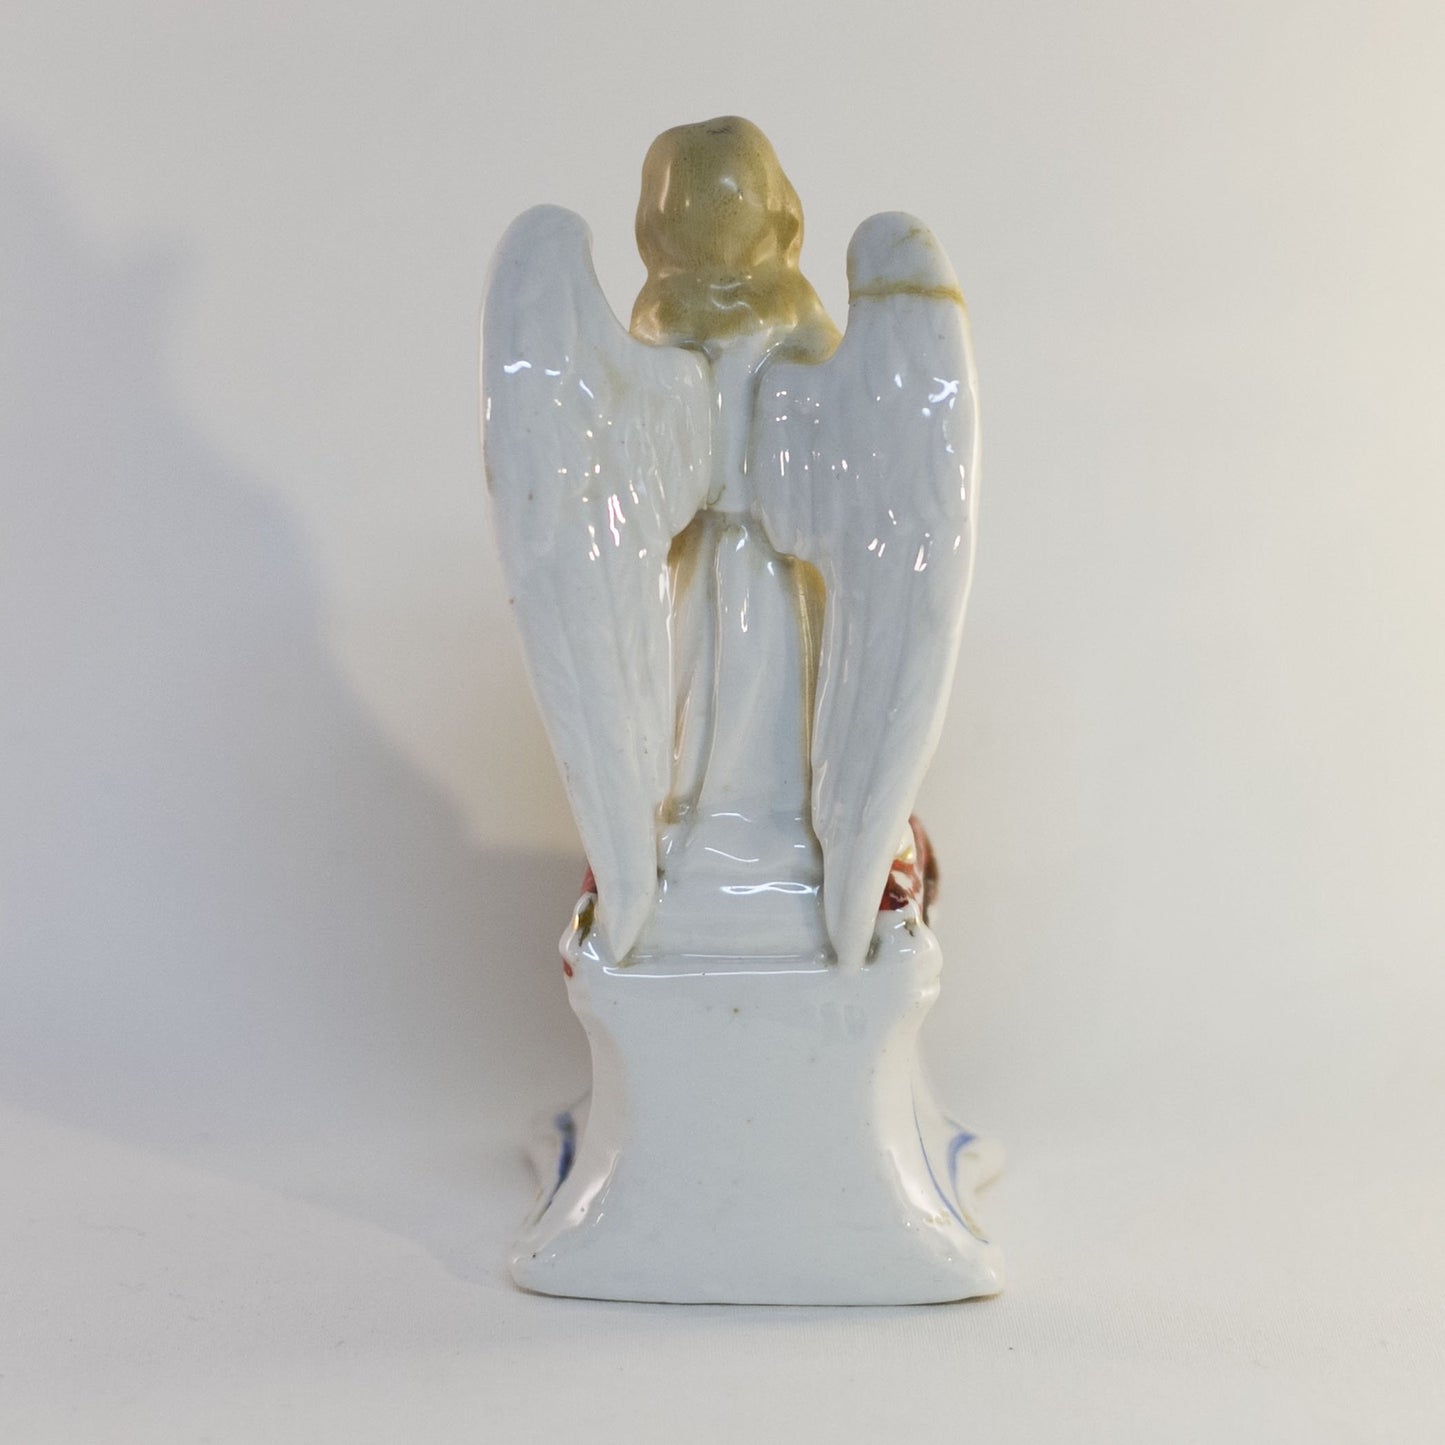 Antique Porcelain PRAYING ANGEL Kneeling in Meditation Figurine Damaged